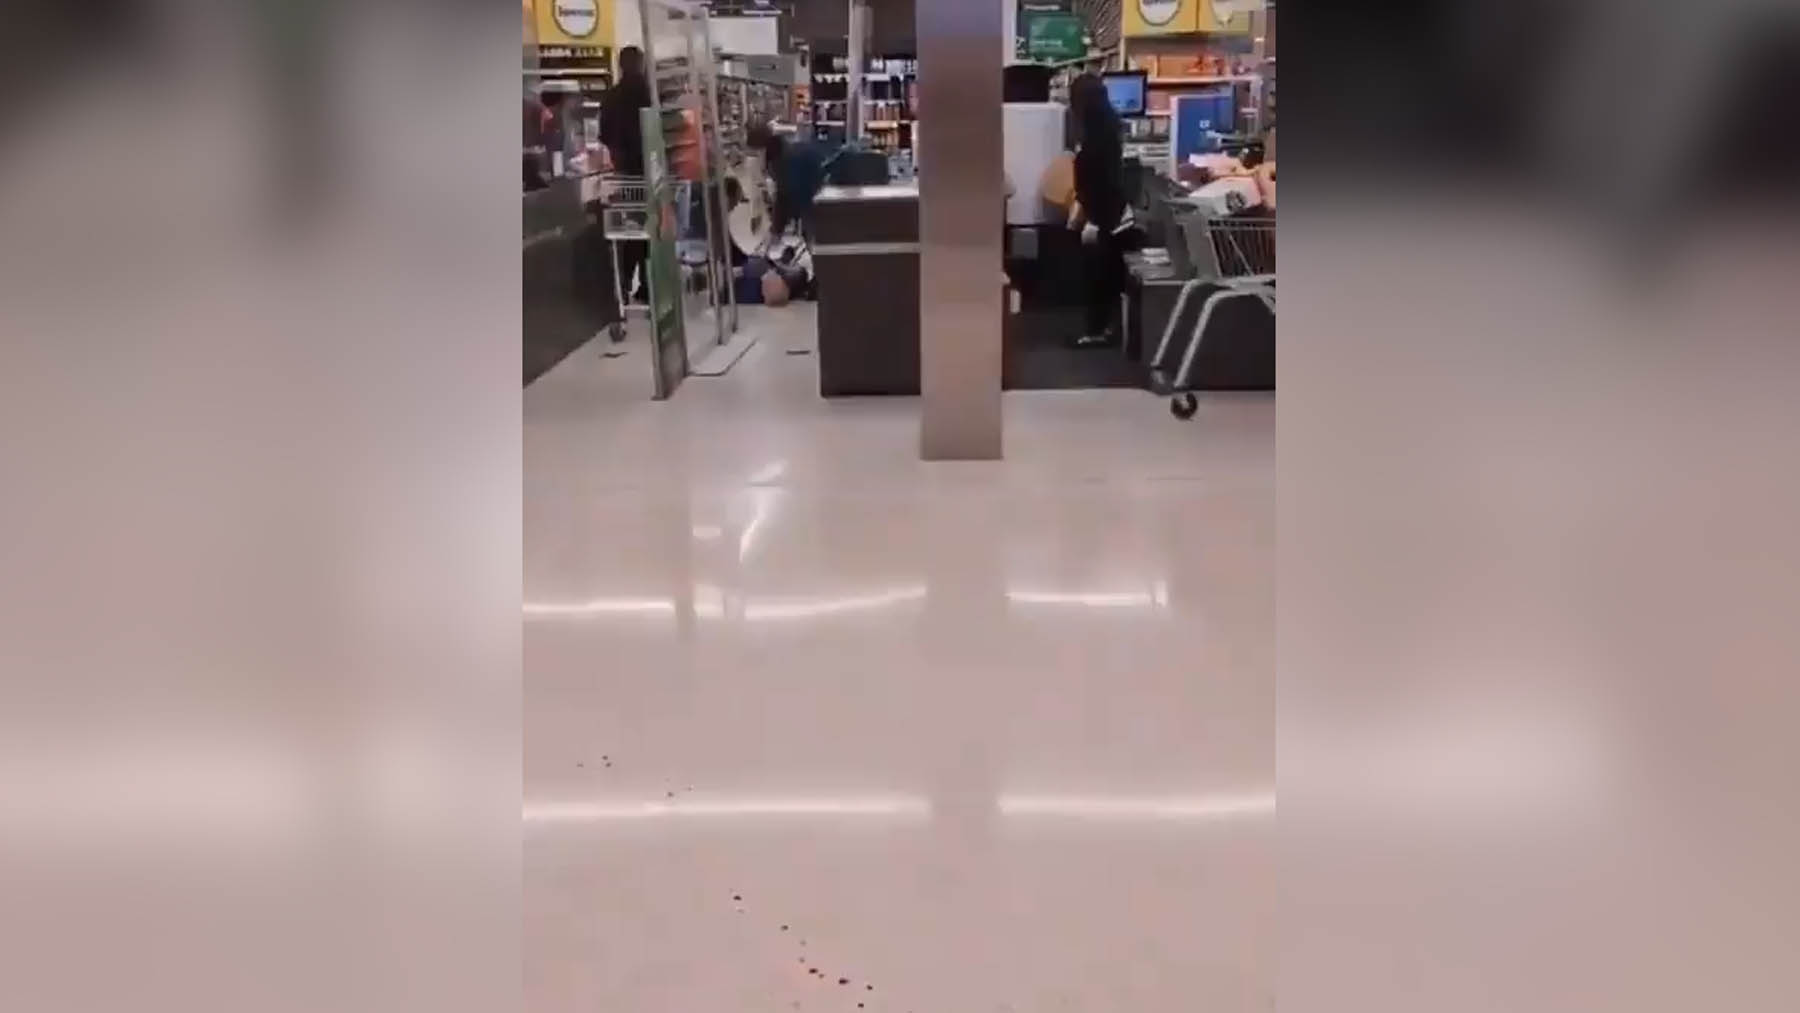 Un video muestra a un señor en el suelo, presumiblemente después de ser apuñalado, antes de que se oigan los disparos con los que la policía abate al terrorista.